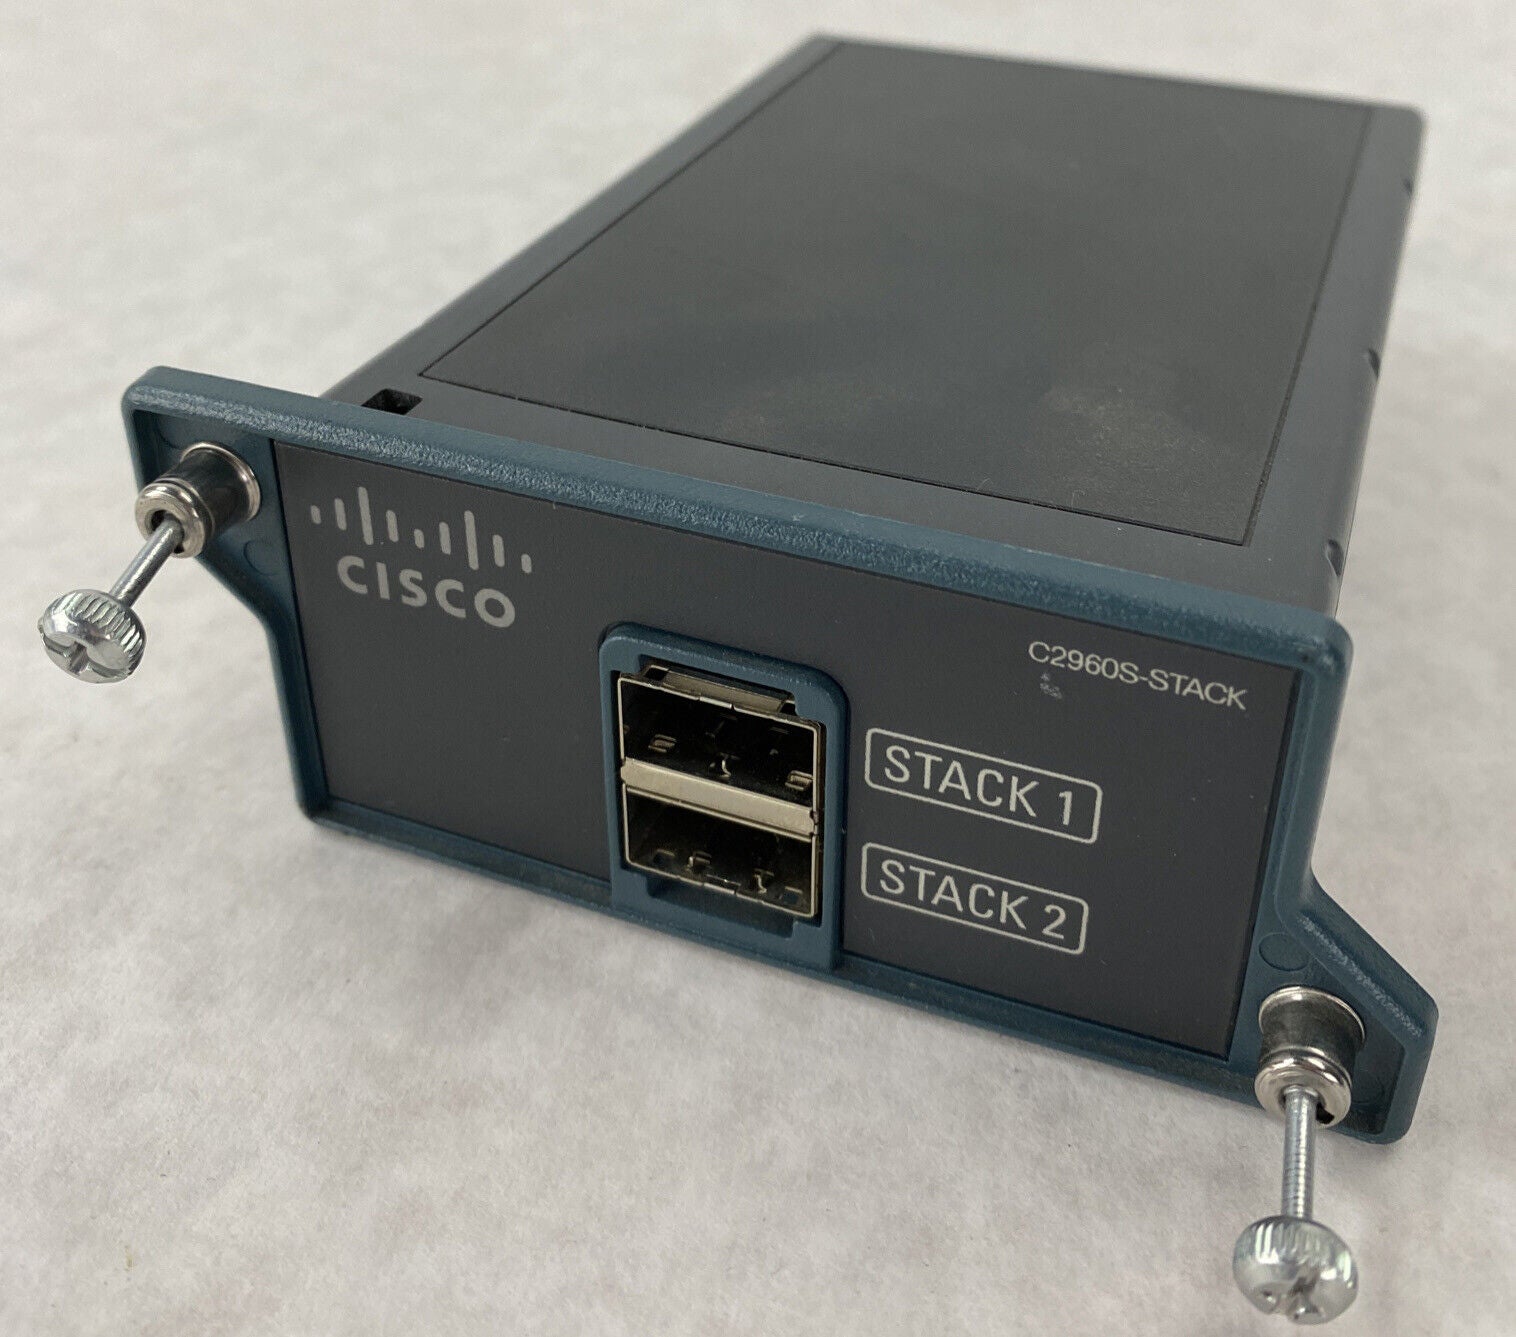 Cisco 800-31320-02 C2960S-Stack Catalyst 2960S Flexstack